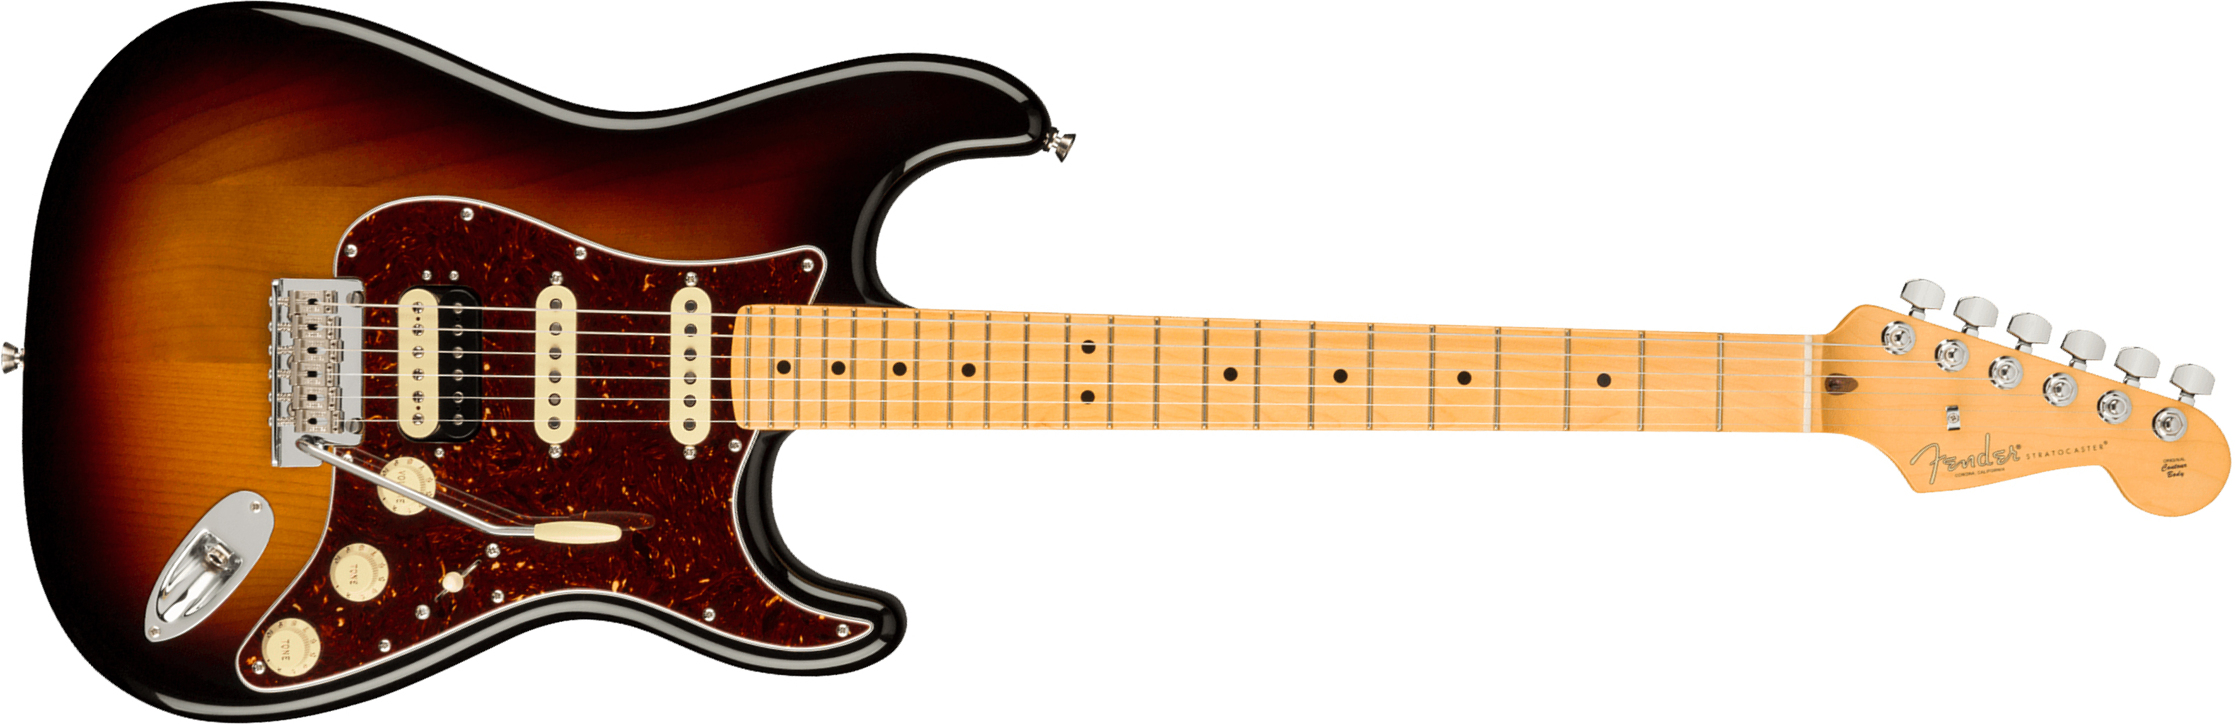 Fender Strat American Professional Ii Hss Usa Mn - 3-color Sunburst - Guitare Électrique Forme Str - Main picture